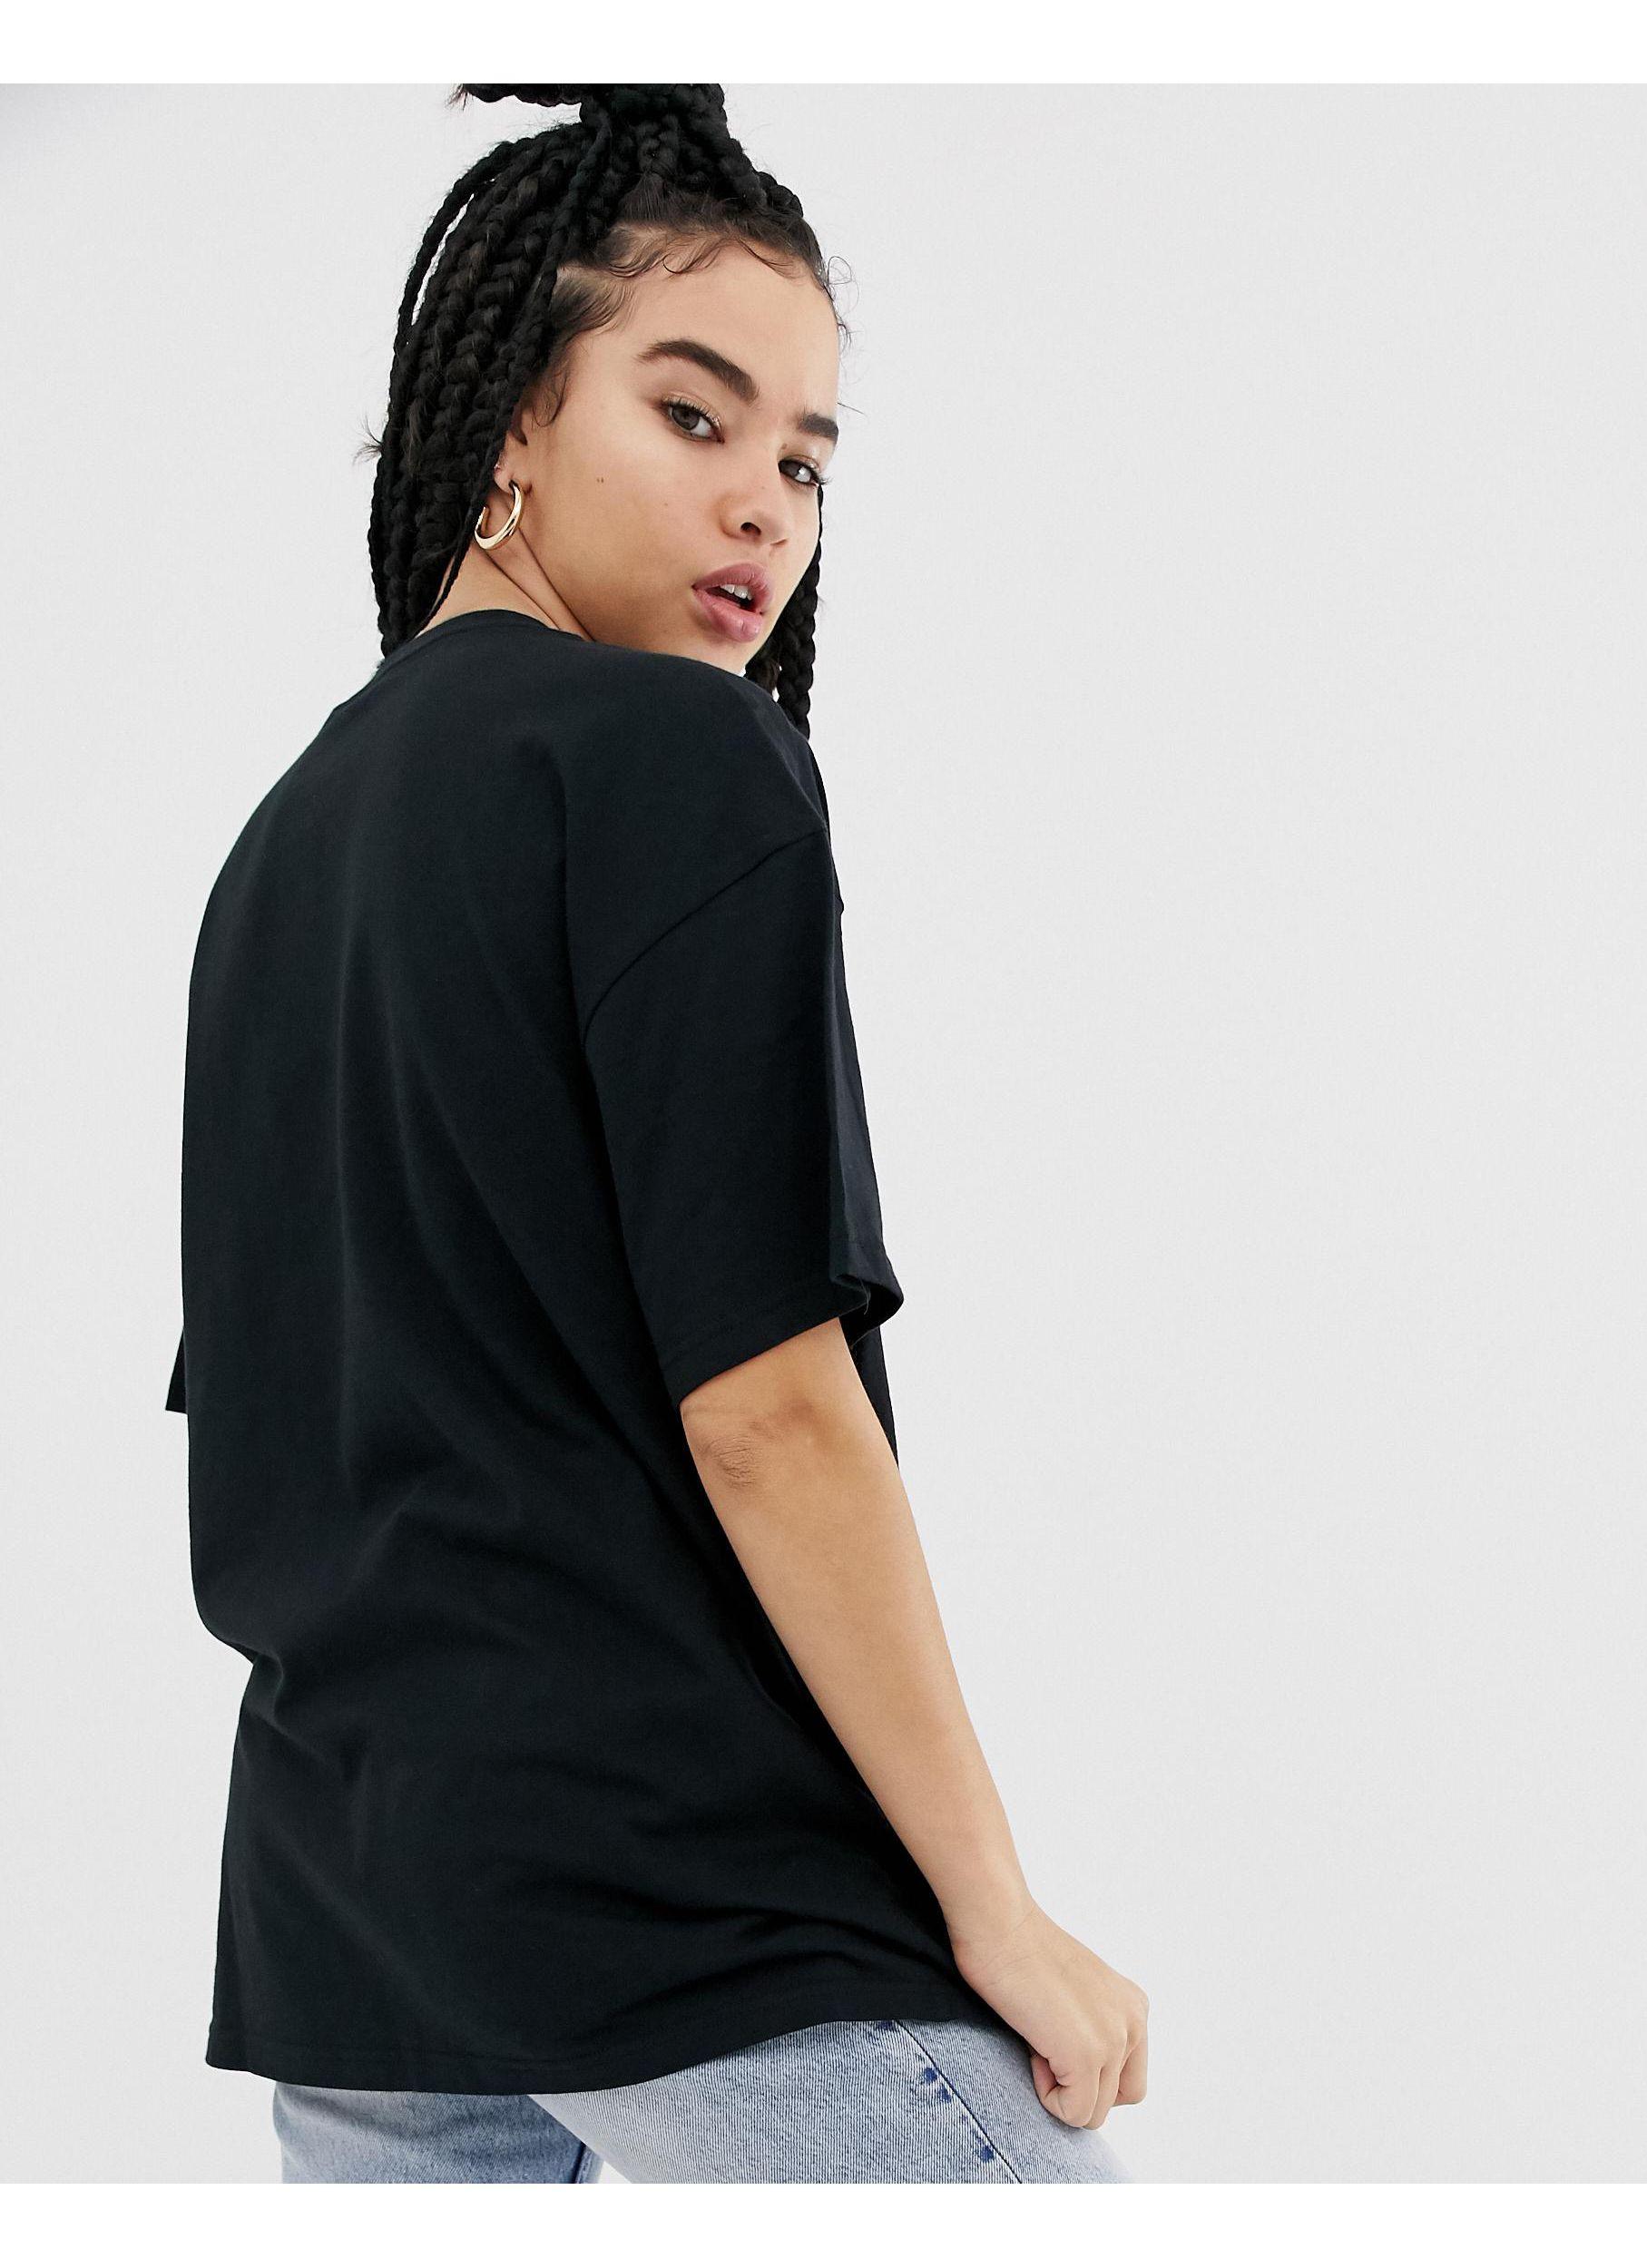 Nike Oversized Boyfriend T-shirt in Black